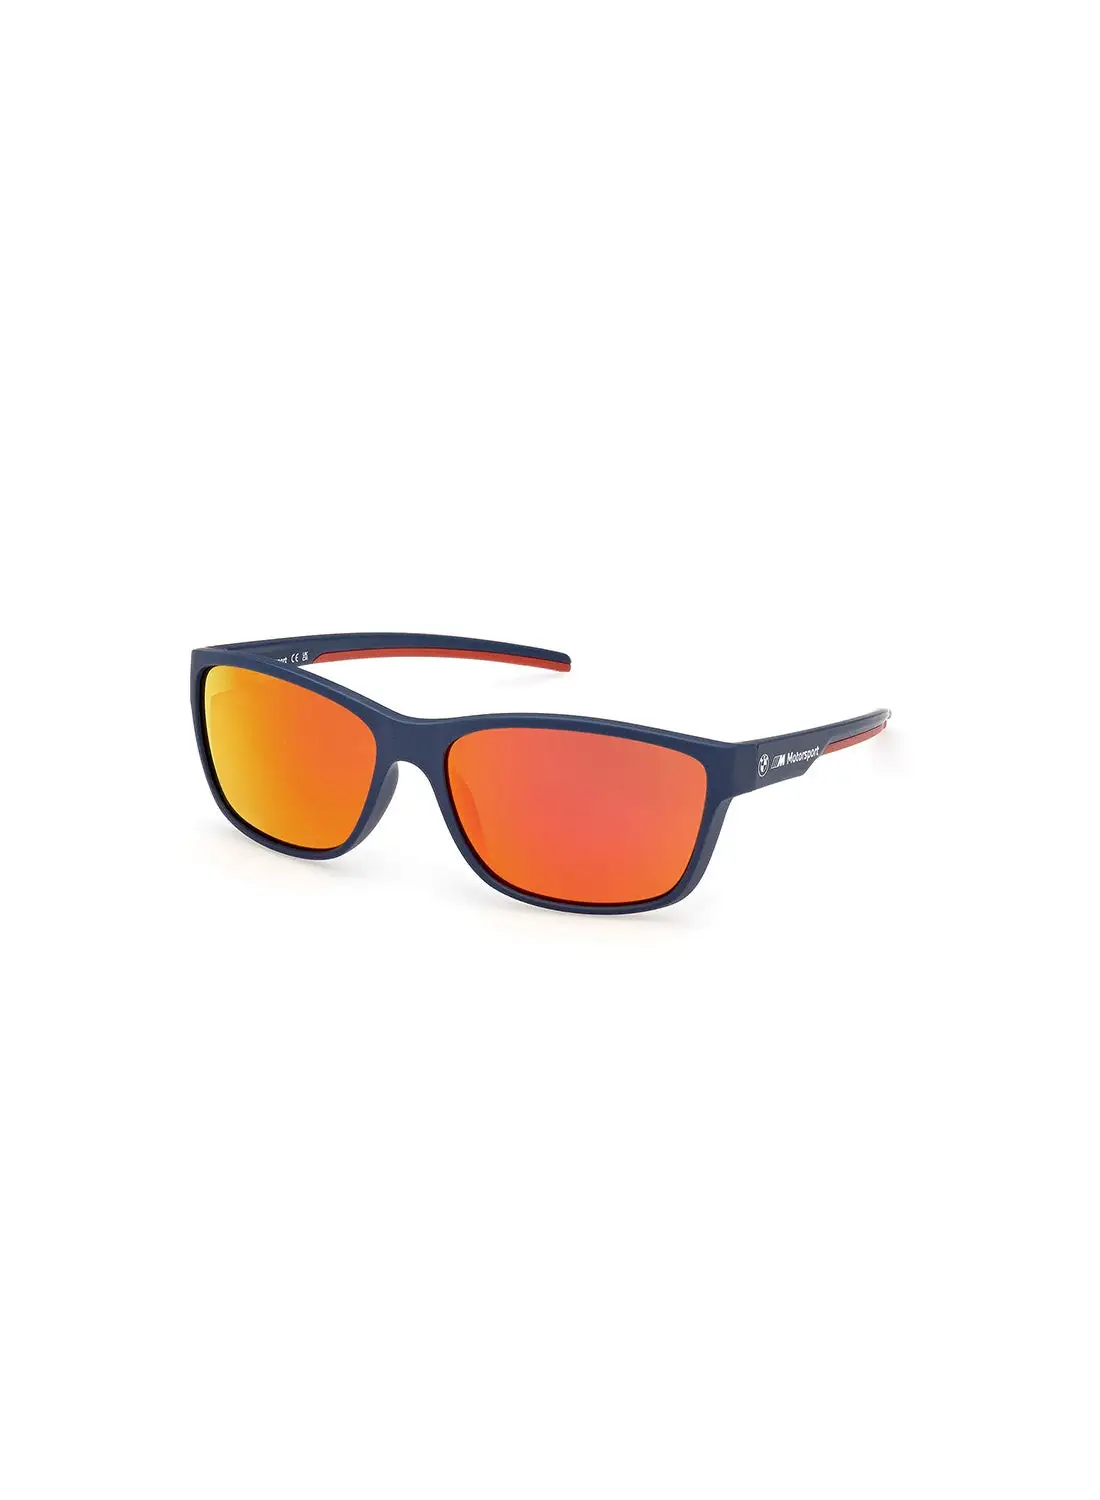 نظارة شمسية بي ام دبليو للرجال بحماية من الأشعة فوق البنفسجية - BS003691U60 - مقاس العدسة: 60 ملم